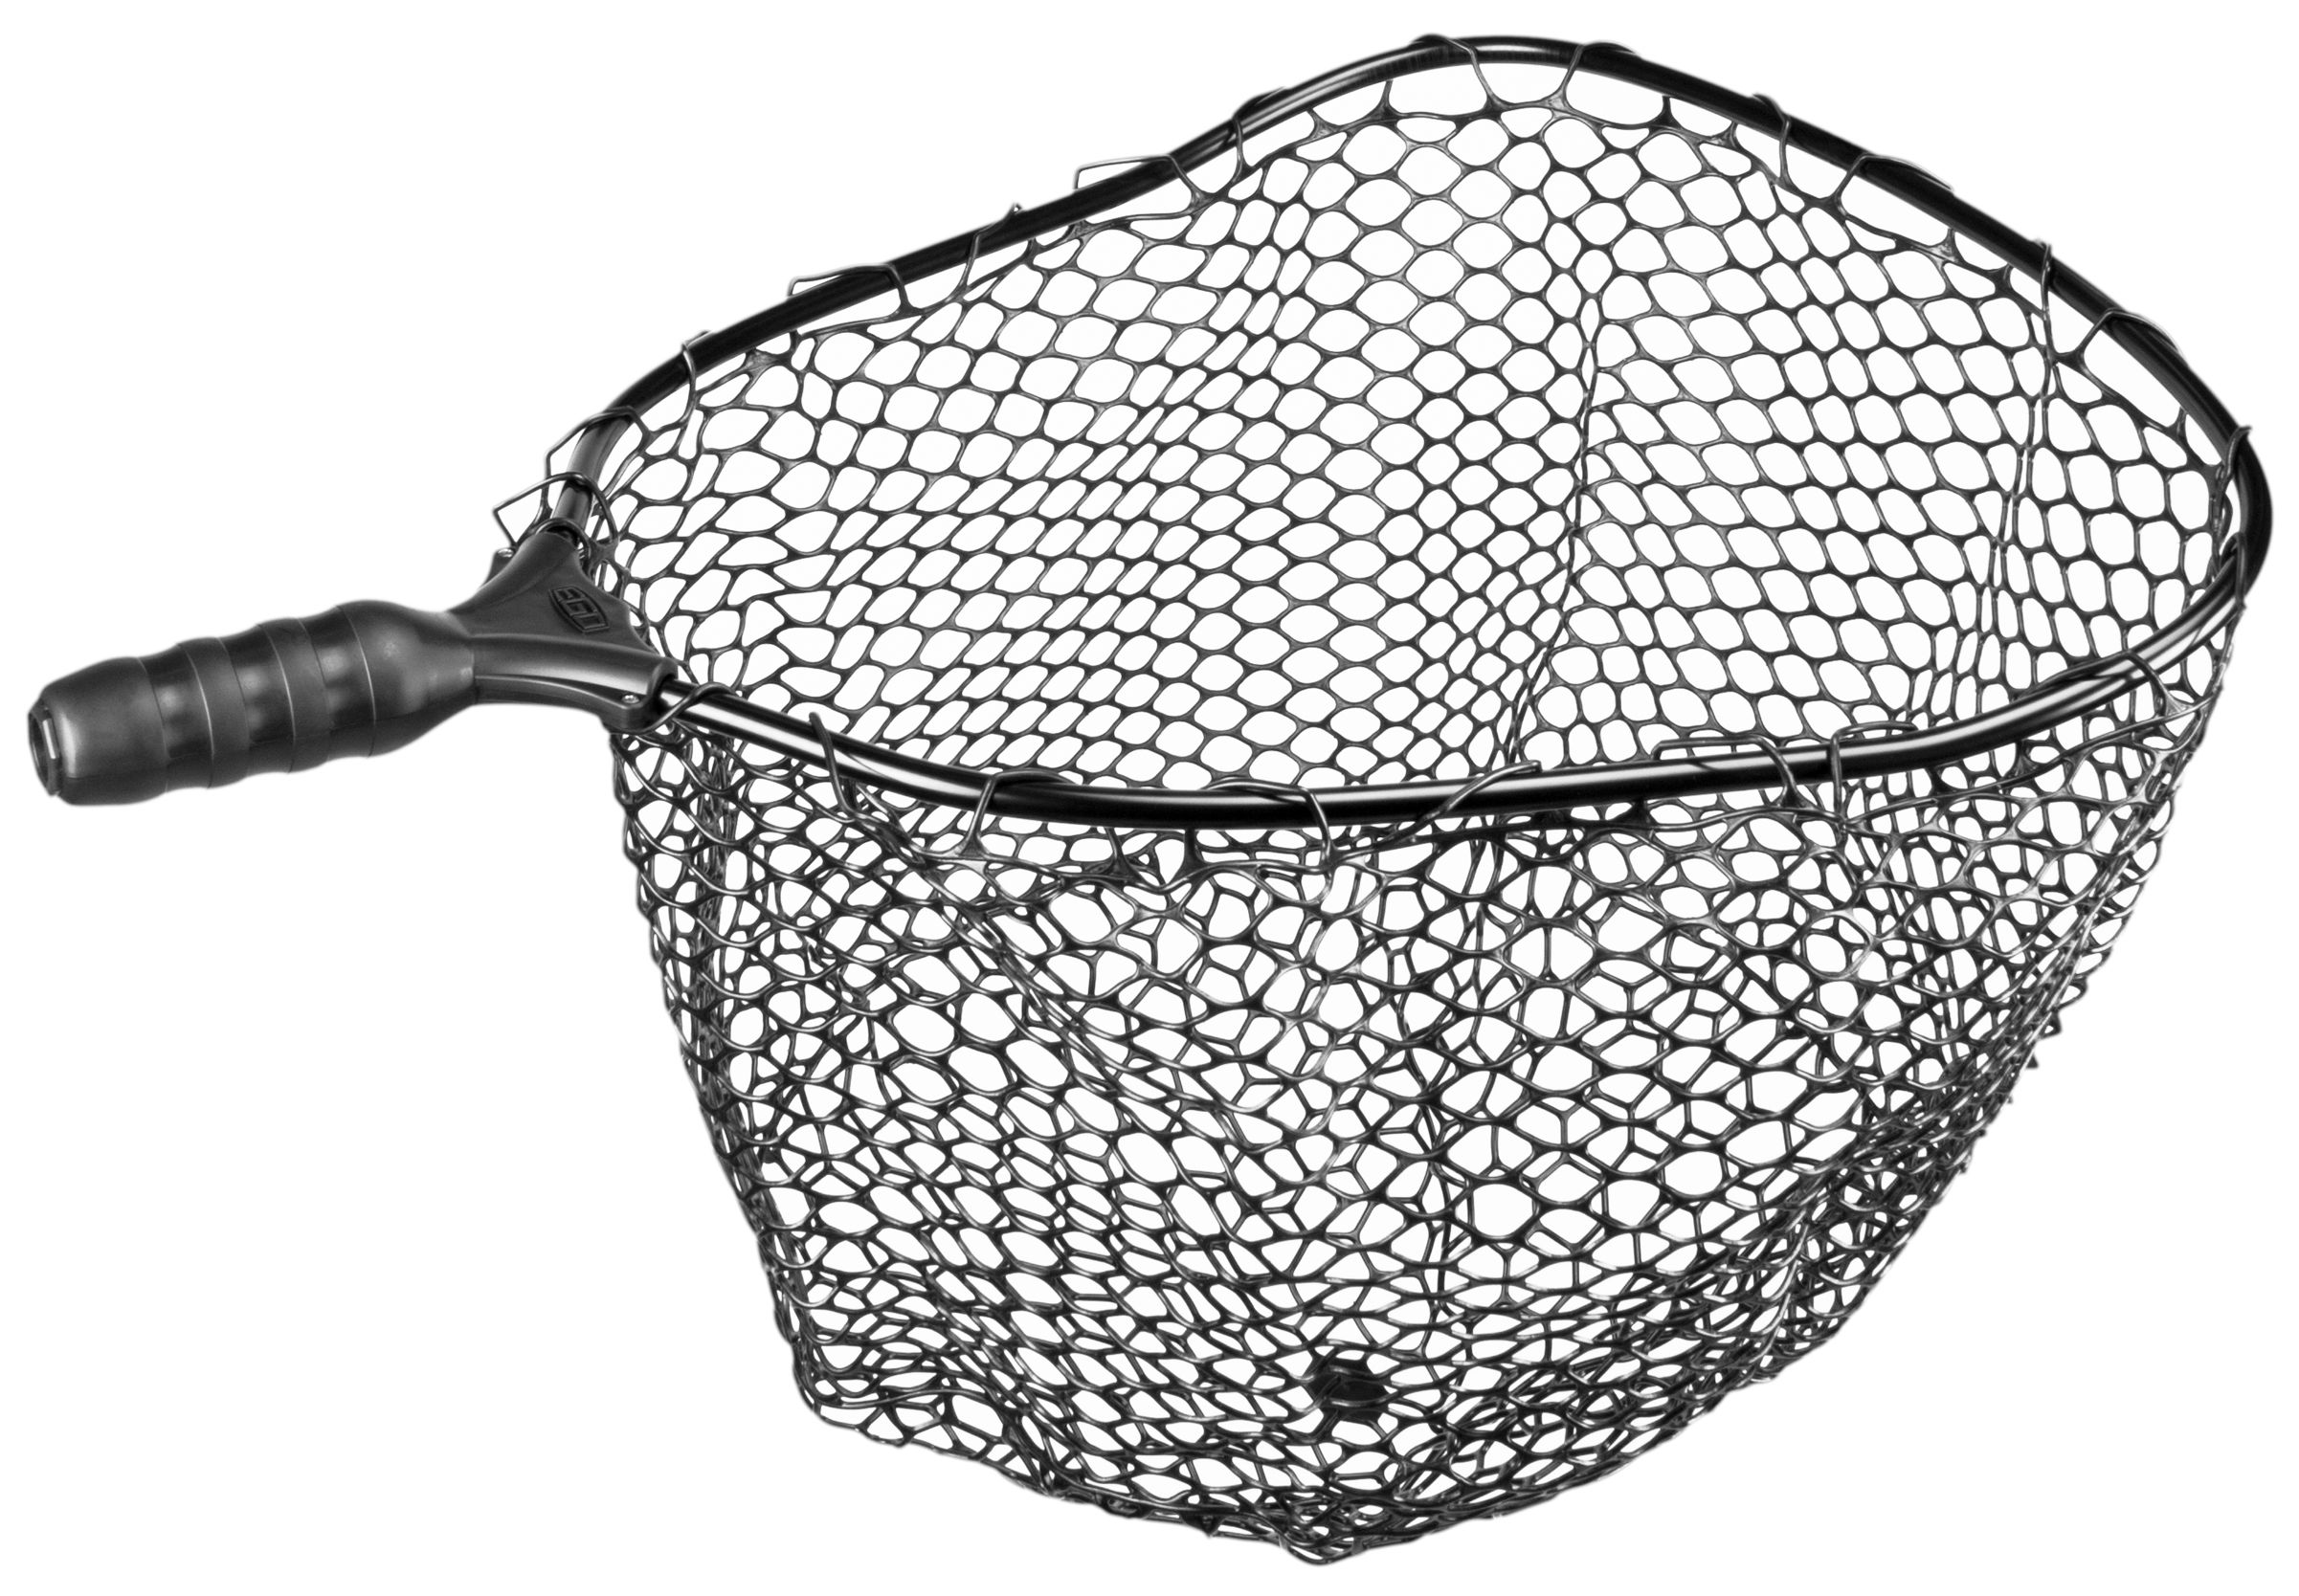 Ego - Large 19 x 21 Inch Rubber Mesh Fishing Net 